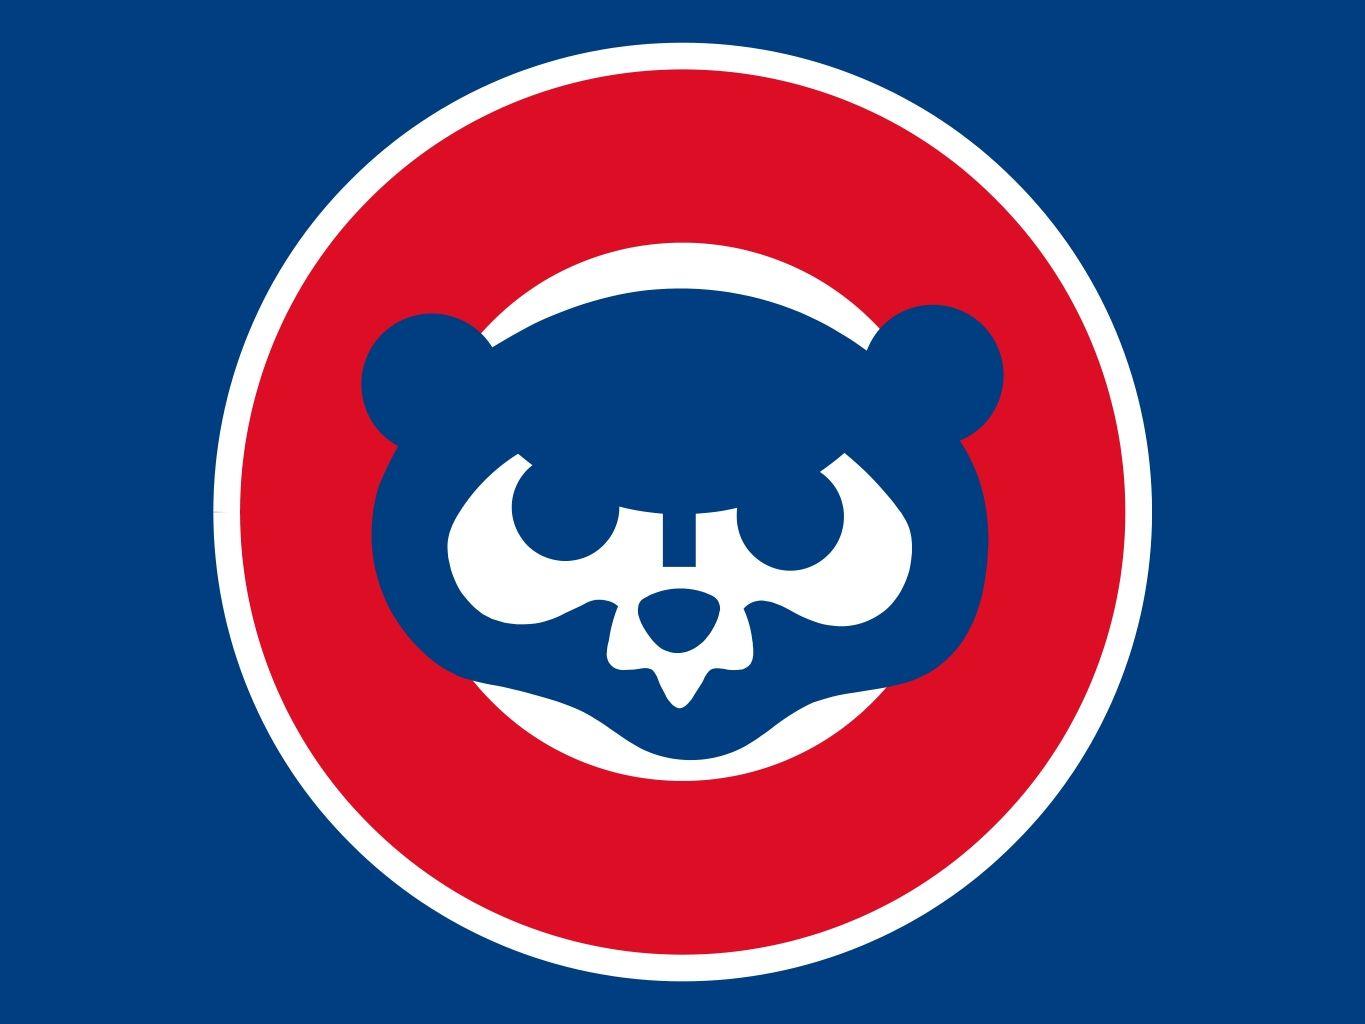 Chicago Cubs Mascot Baseball Team Wallpaper Chicago Cubs